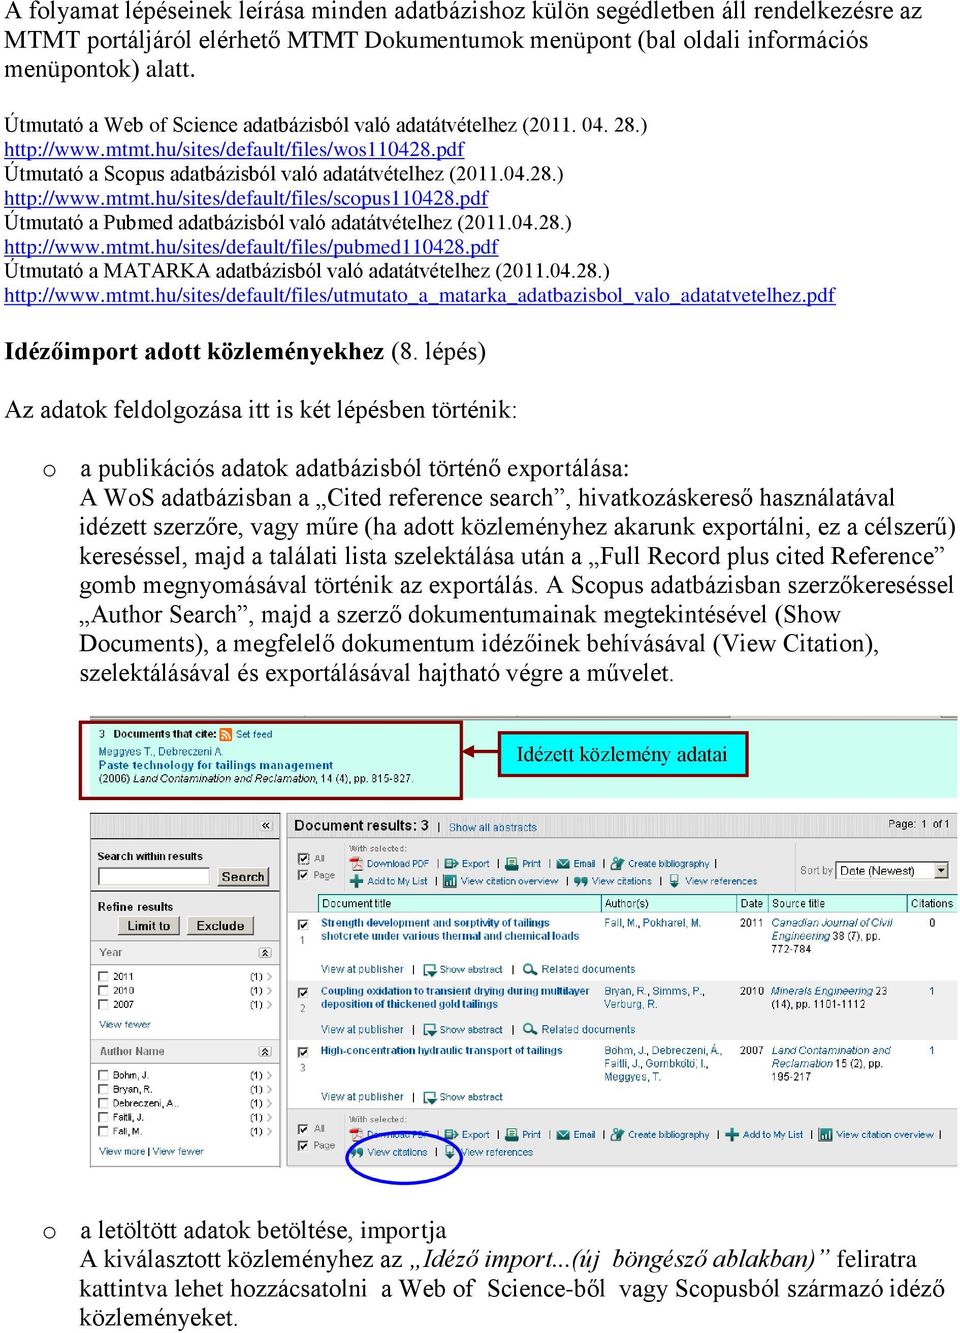 pdf Útmutató a Pubmed adatbázisból való adatátvételhez (2011.04.28.) http://www.mtmt.hu/sites/default/files/pubmed110428.pdf Útmutató a MATARKA adatbázisból való adatátvételhez (2011.04.28.) http://www.mtmt.hu/sites/default/files/utmutato_a_matarka_adatbazisbol_valo_adatatvetelhez.